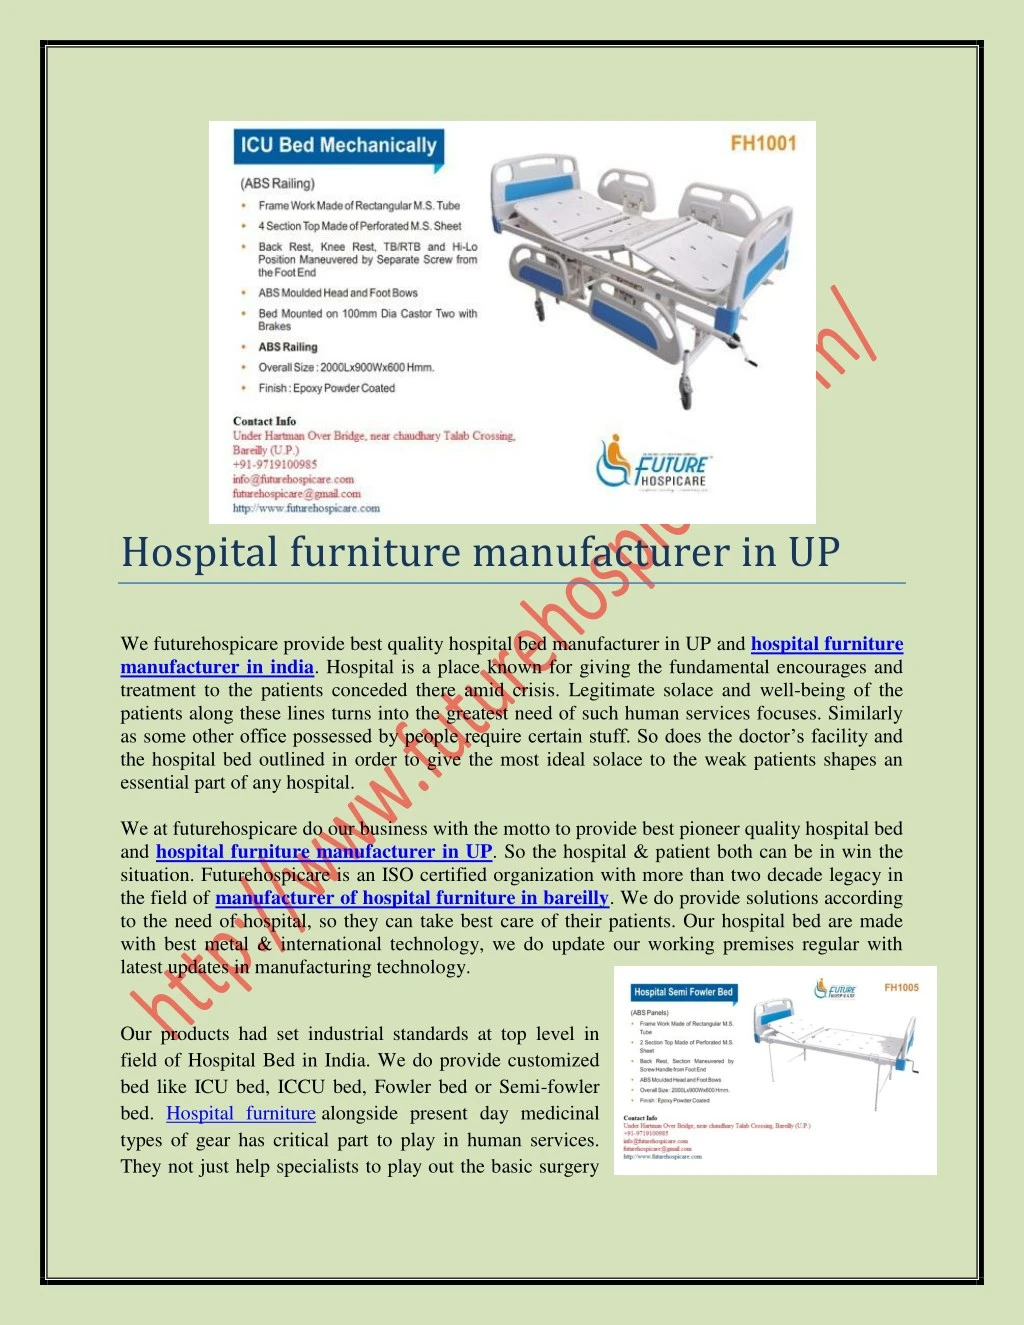 hospital furniture manufacturer in up